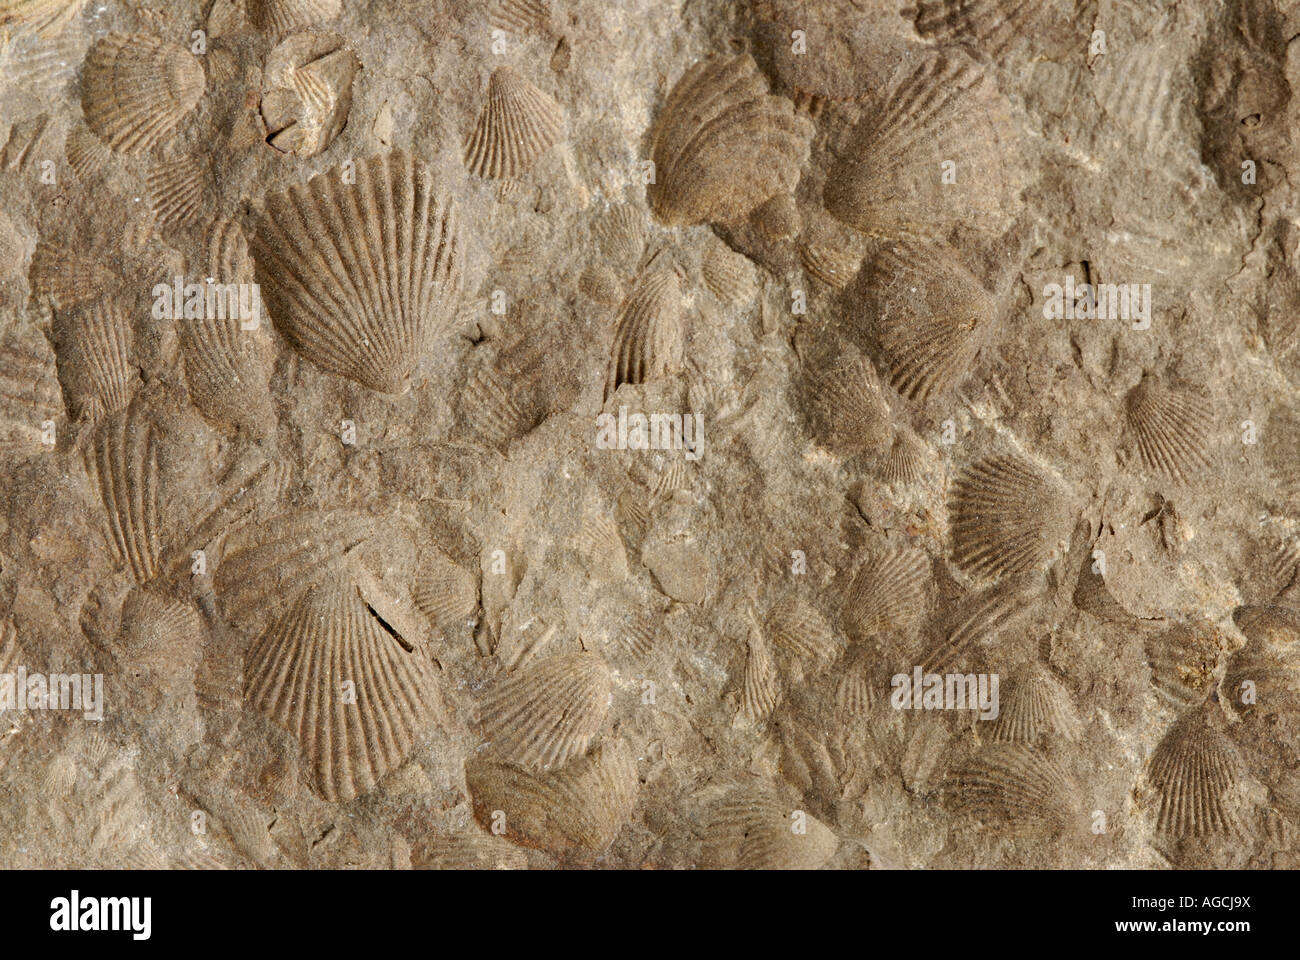 Roccia con fossili di conchiglie dei pellegrini e altri pettinidi antica. Foto Stock